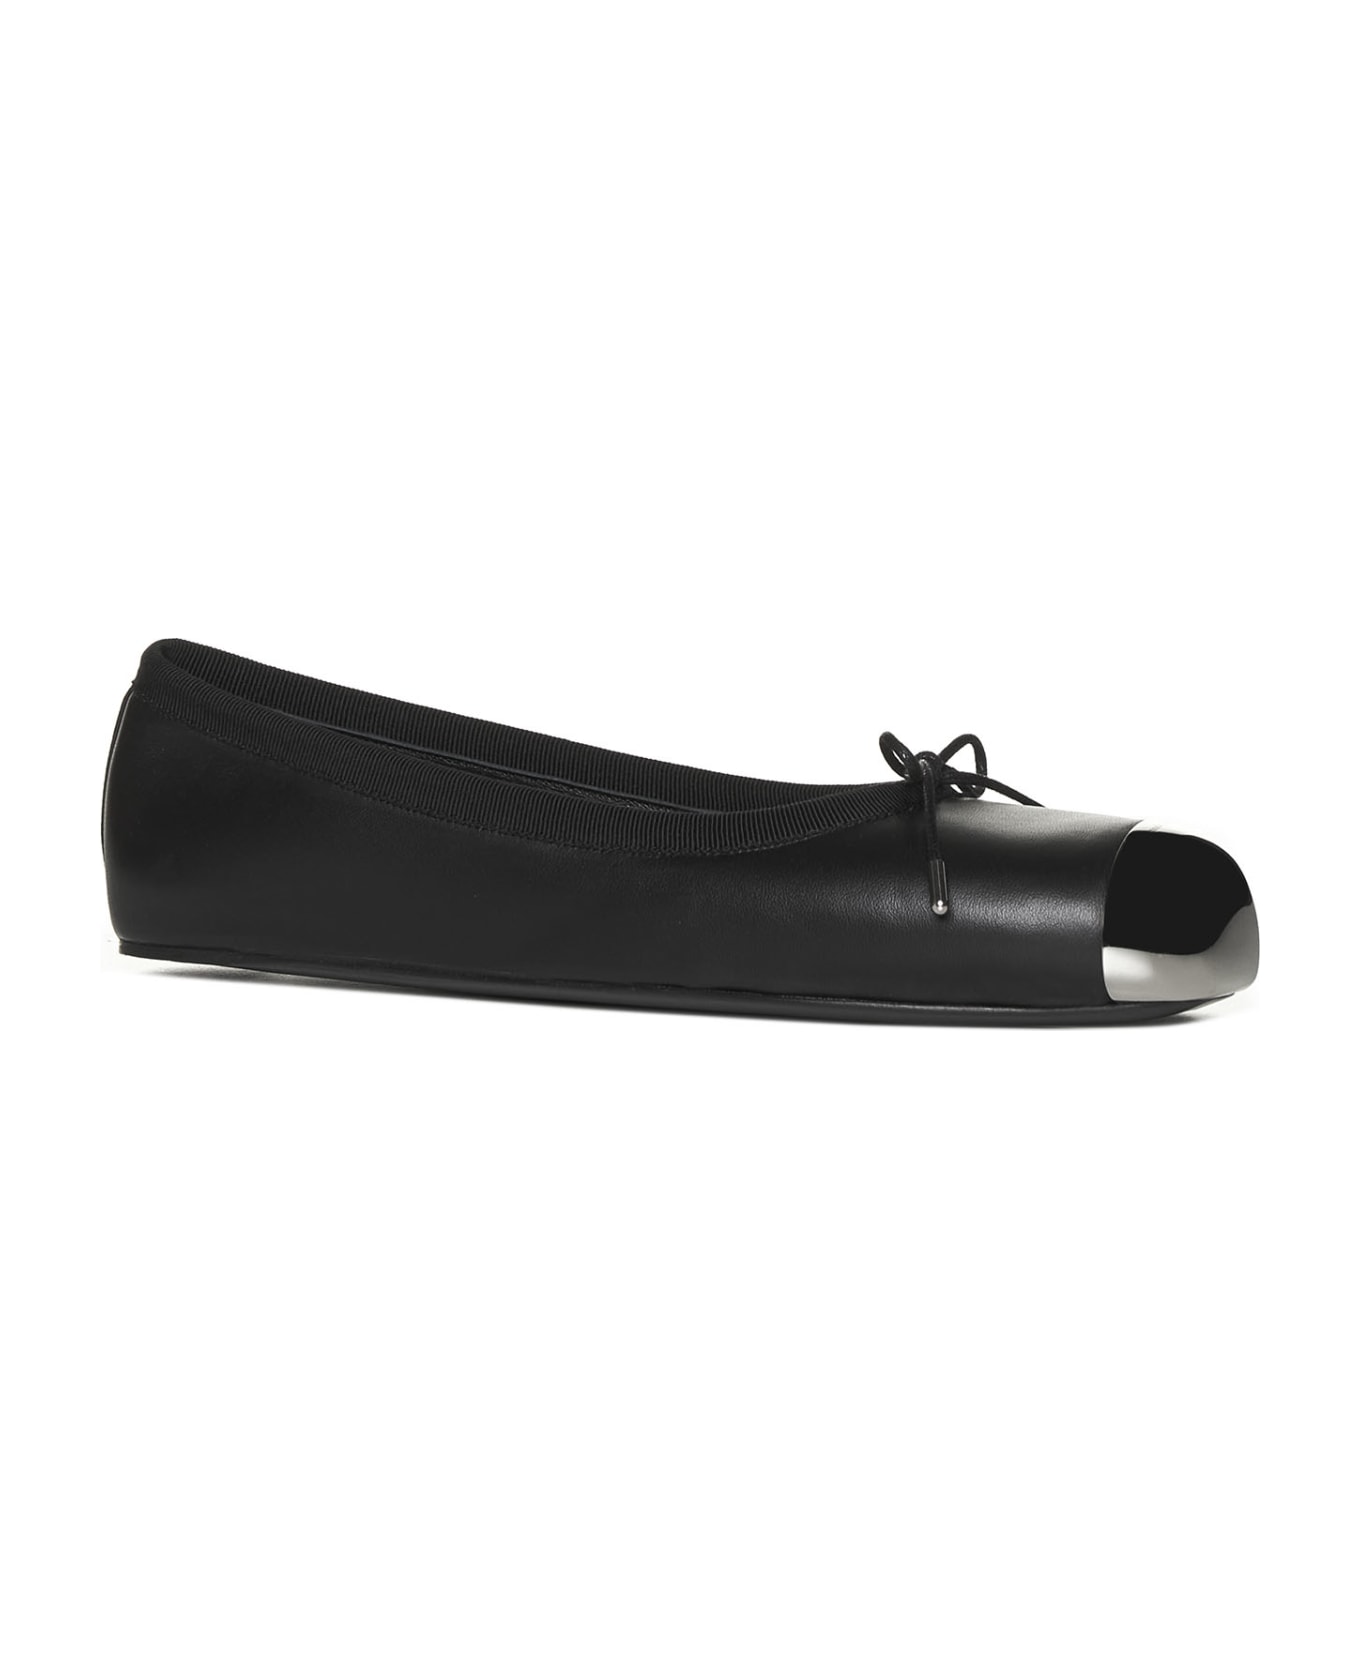 Alexander McQueen Metal Toe Ballet Flats - Black Silver フラットシューズ